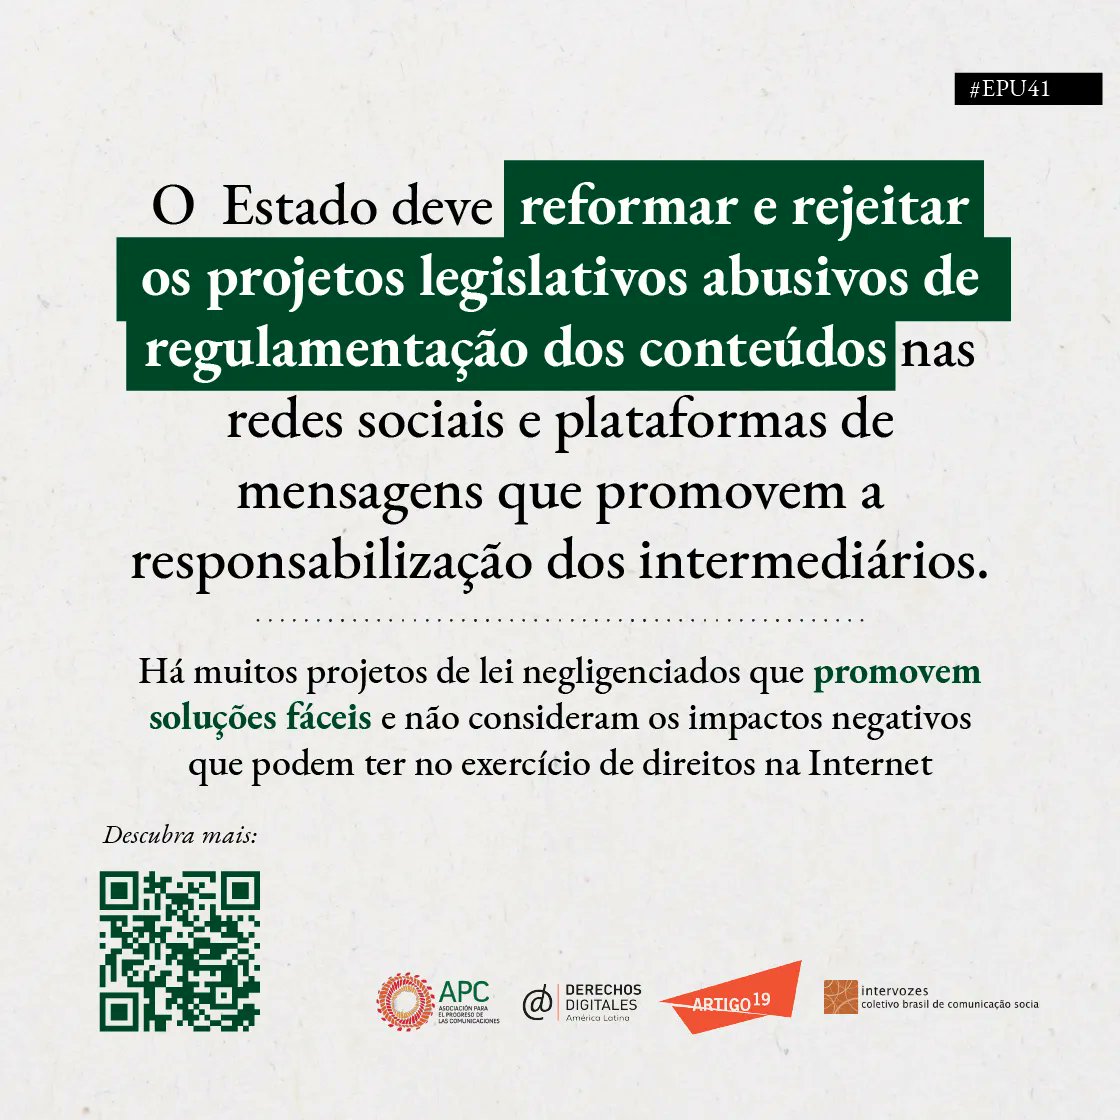 #EPU41 #BRASIL É tarefa do Estado reformar e rejeitar os projetos legislativos abusivos de regulamentação dos conteúdos nas redes sociais e plataformas de mensagens que promovem a responsabilização dos intermediários. Veja: derechosdigitales.org/epu/